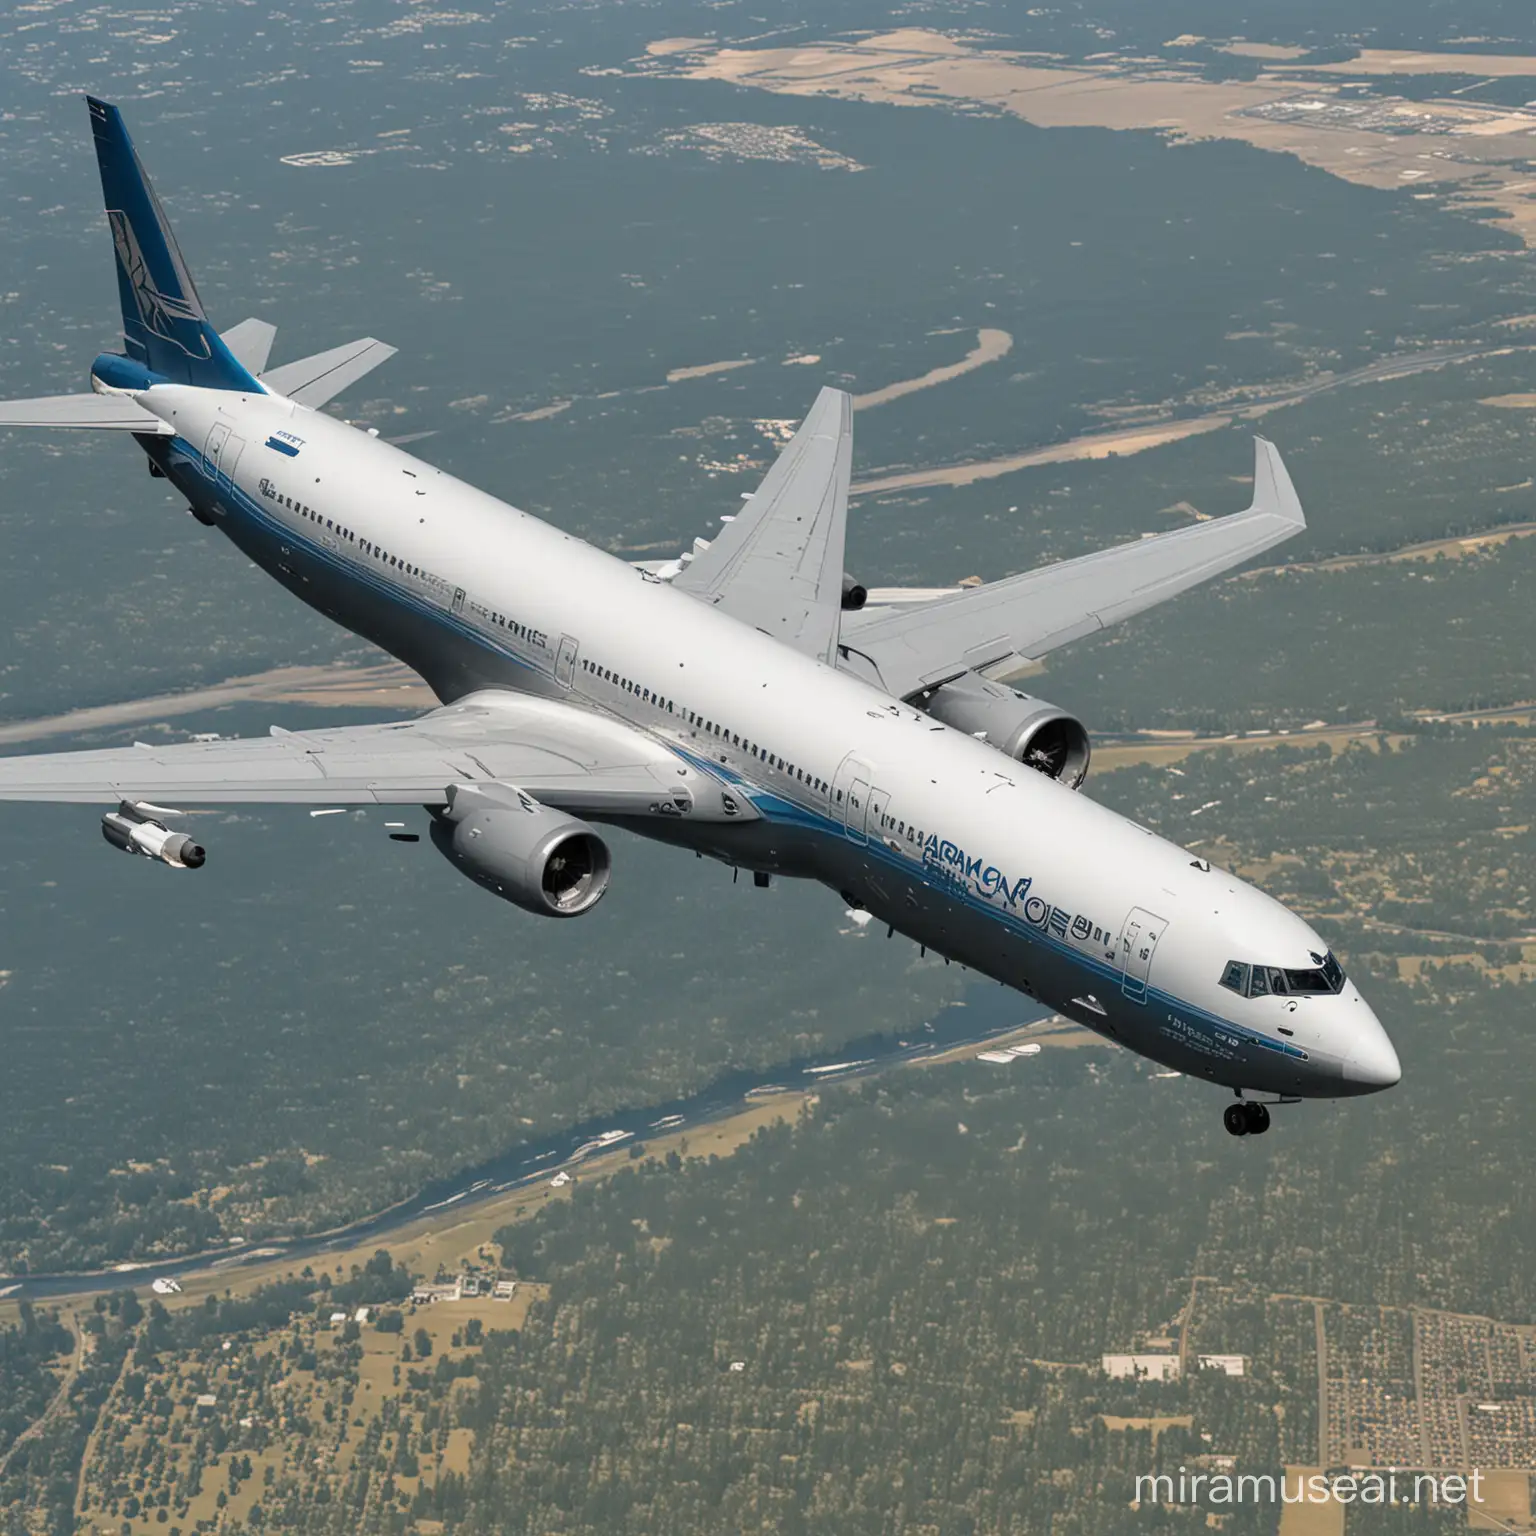 Boeing Airborne Command Center in Flight